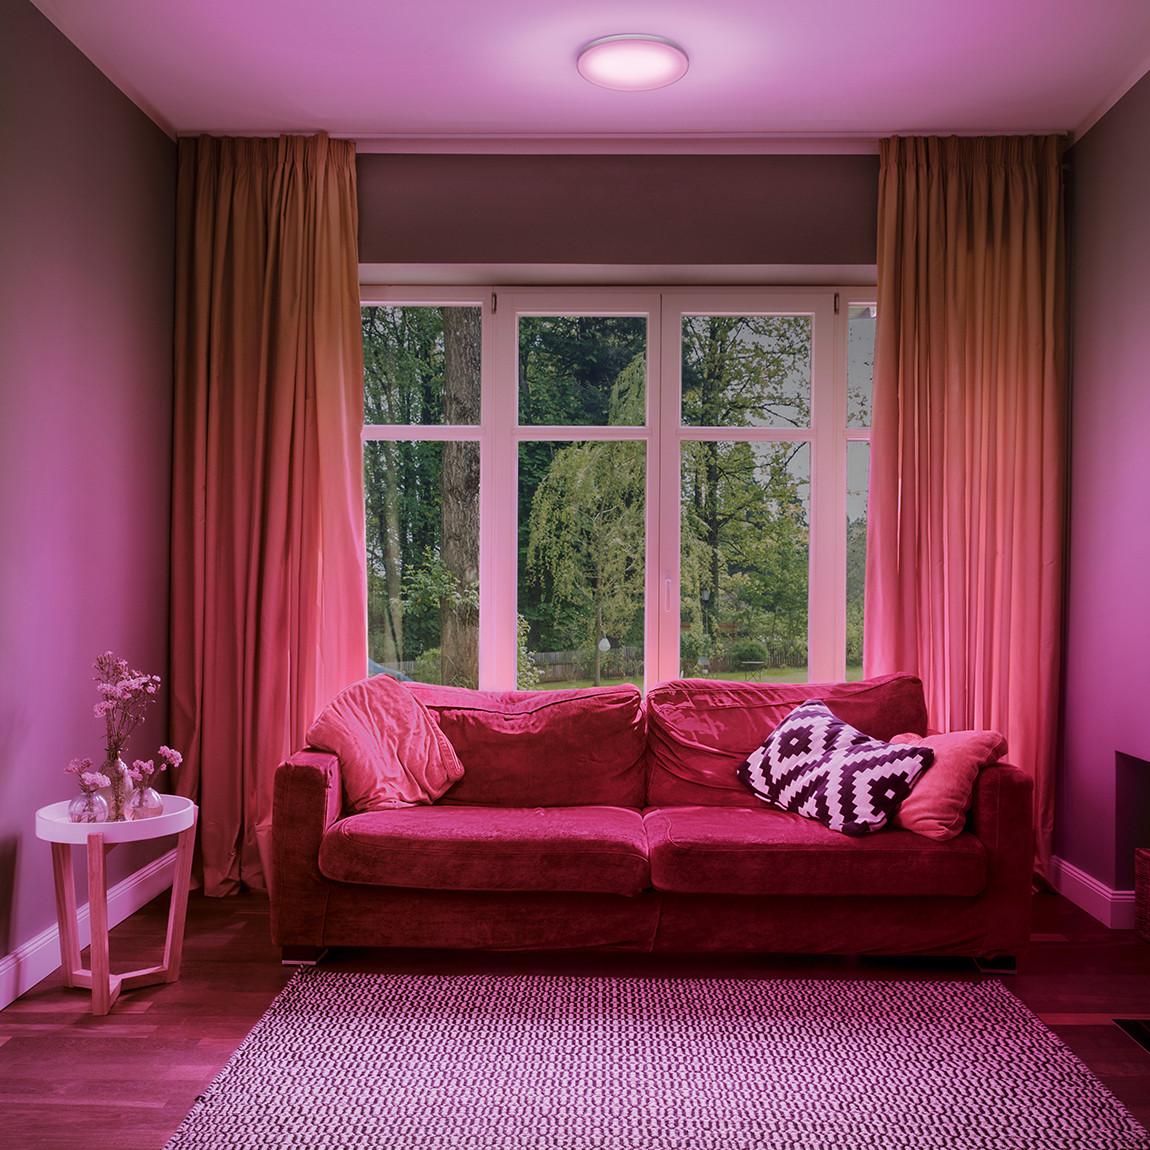 Ledvance SMART+ Planon Frameless rund CCT 300 mm - Lifestyle - im Wohnzimmer